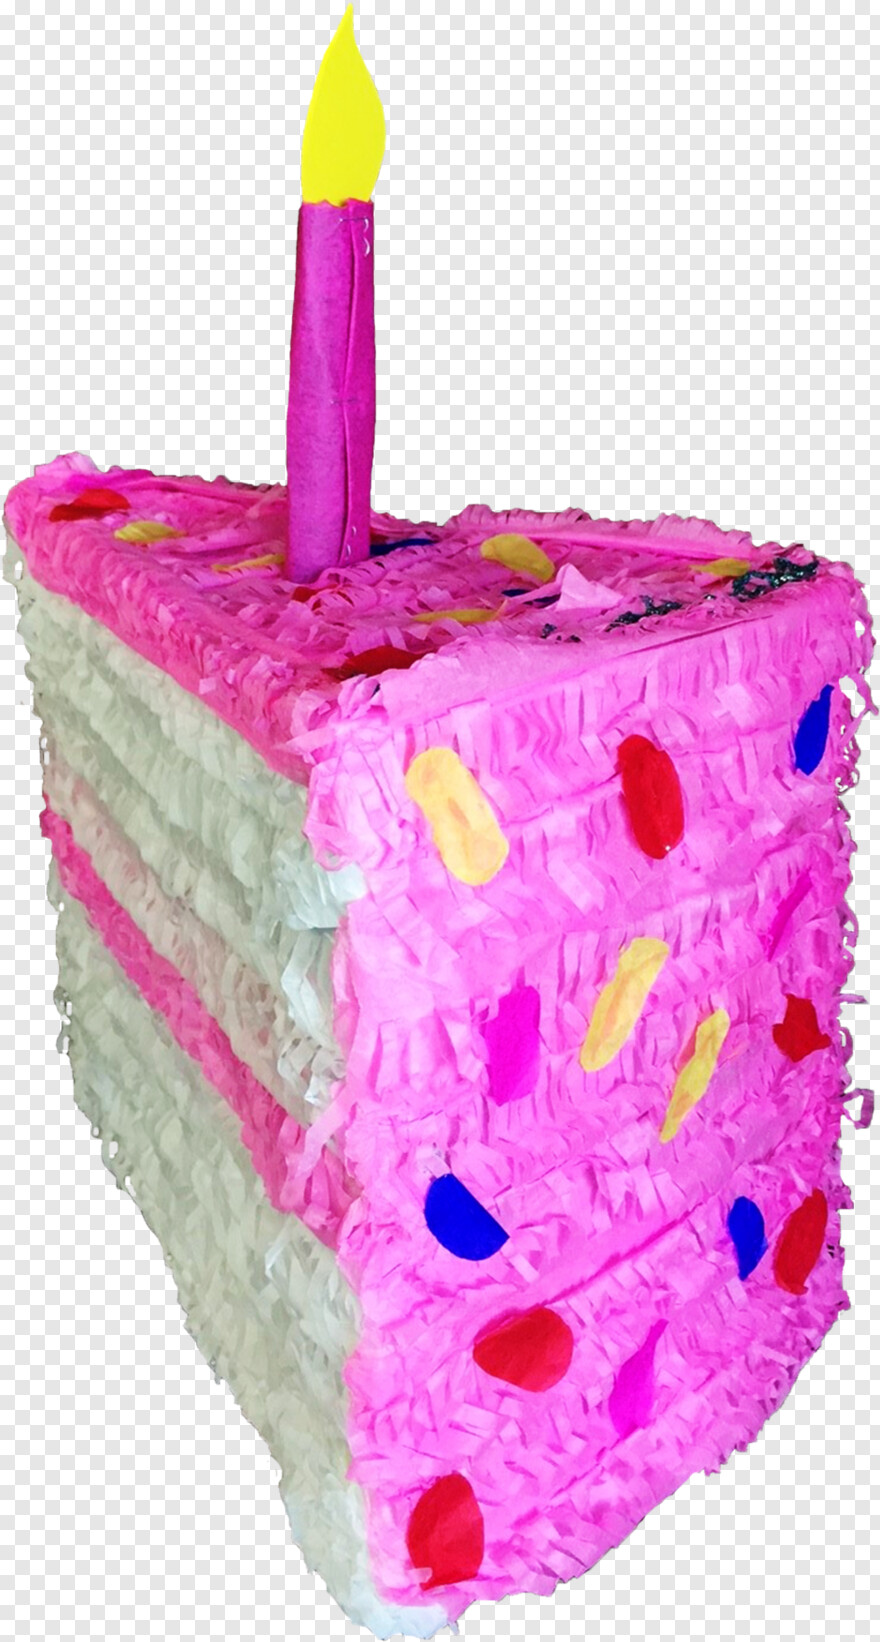 happy-birthday-cake-images # 359448